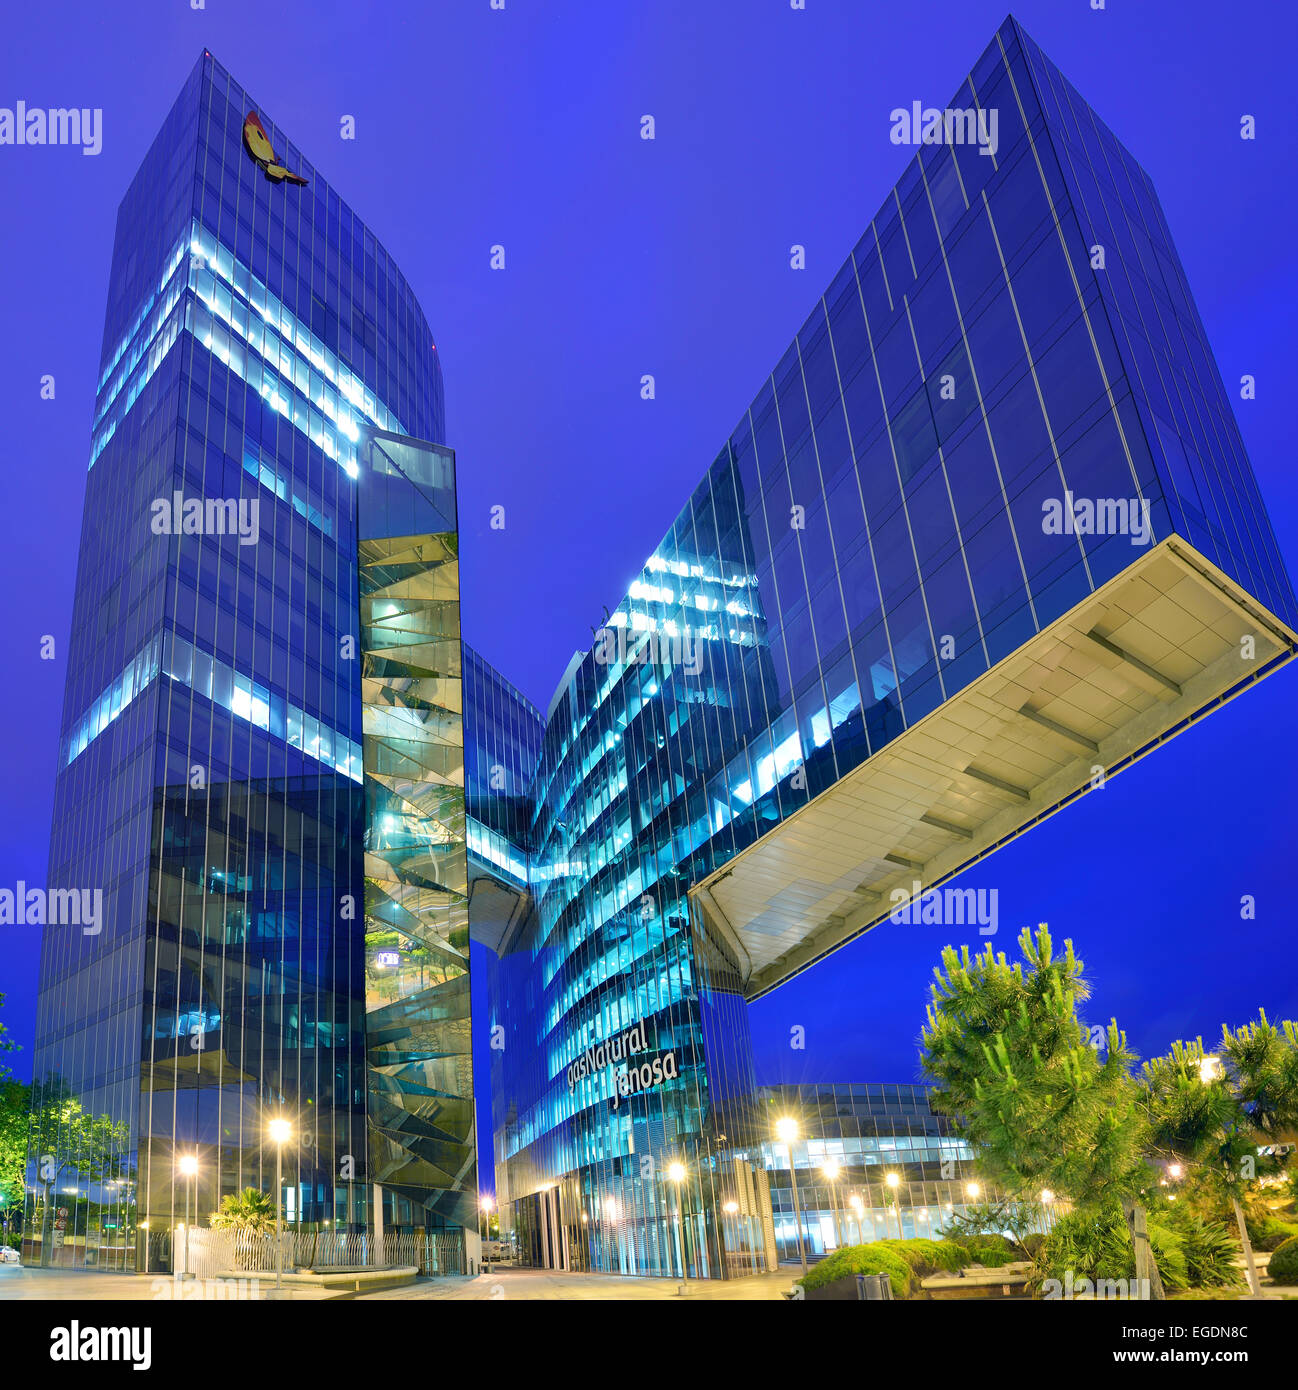 Edificio moderno, illuminata di notte, gasNatural, architetti Enric Miralles e Benedetta Tagliabue, Barceloneta, Barcellona, in Catalogna, Spagna Foto Stock